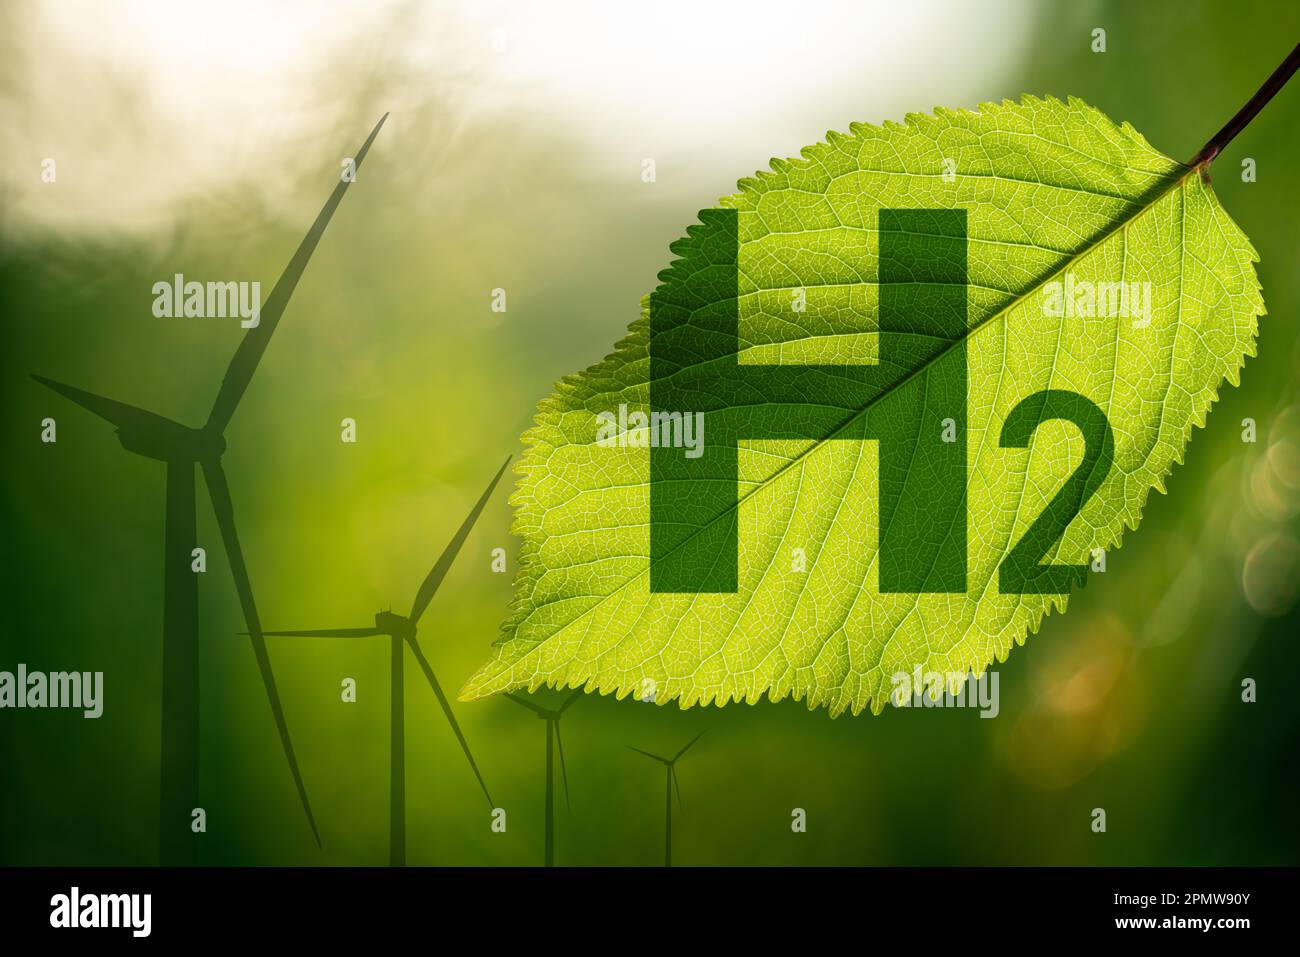 Formule d'hydrogène sur une feuille verte. Éoliennes en arrière-plan. Concept d'hydrogène vert. Photo de haute qualité Banque D'Images